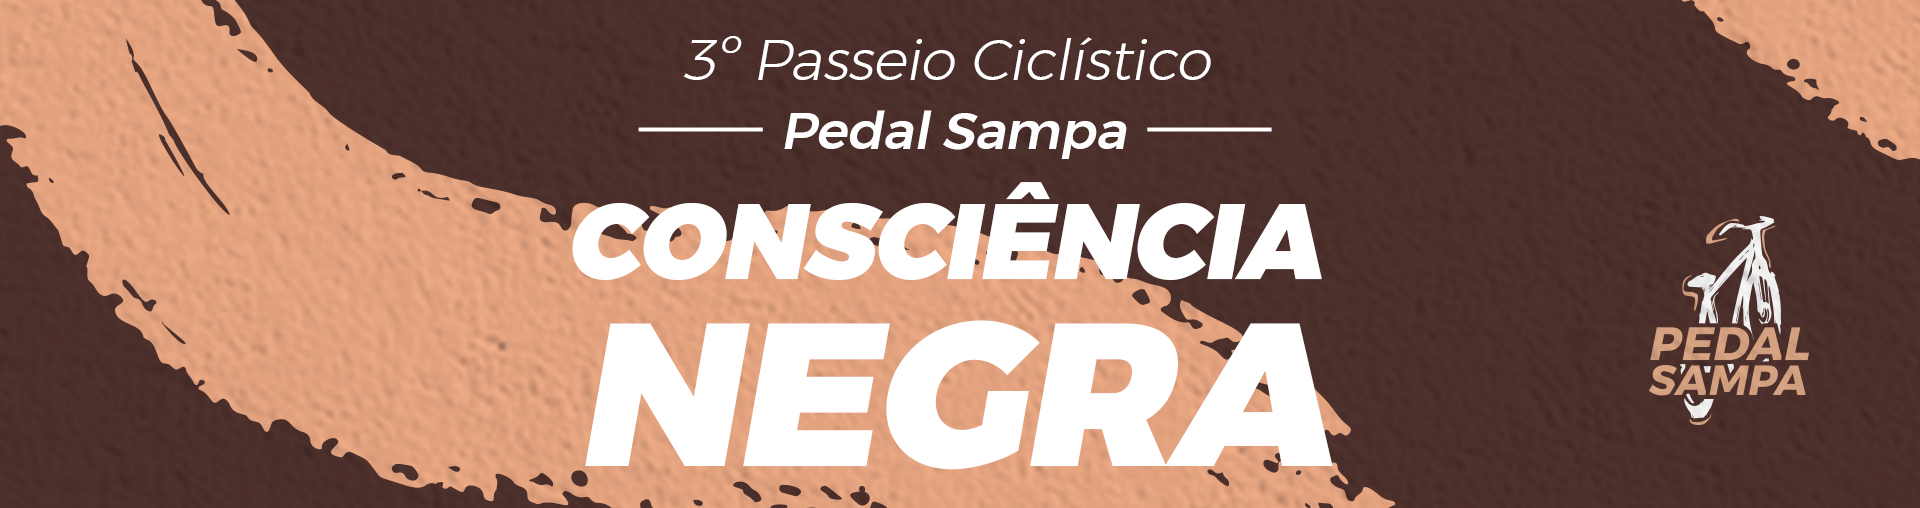 Na imagem, arte do 3º Passeio Ciclístico Pedal Sampa Consciência Negra.